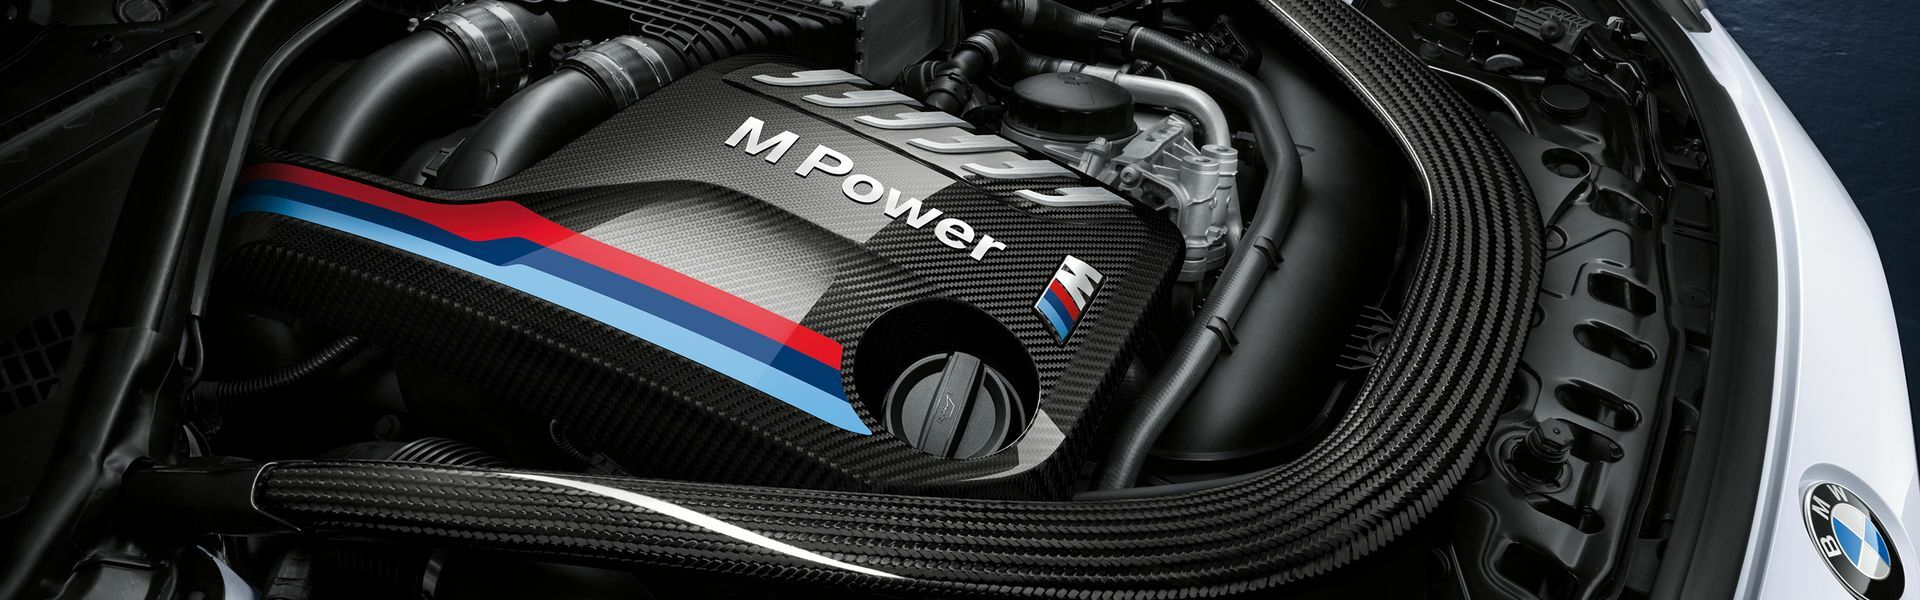 Zvýšení výkonu/ Softwarové úpravy/ Drobné performance díly pro automobil Porsche Cayman GT4 981